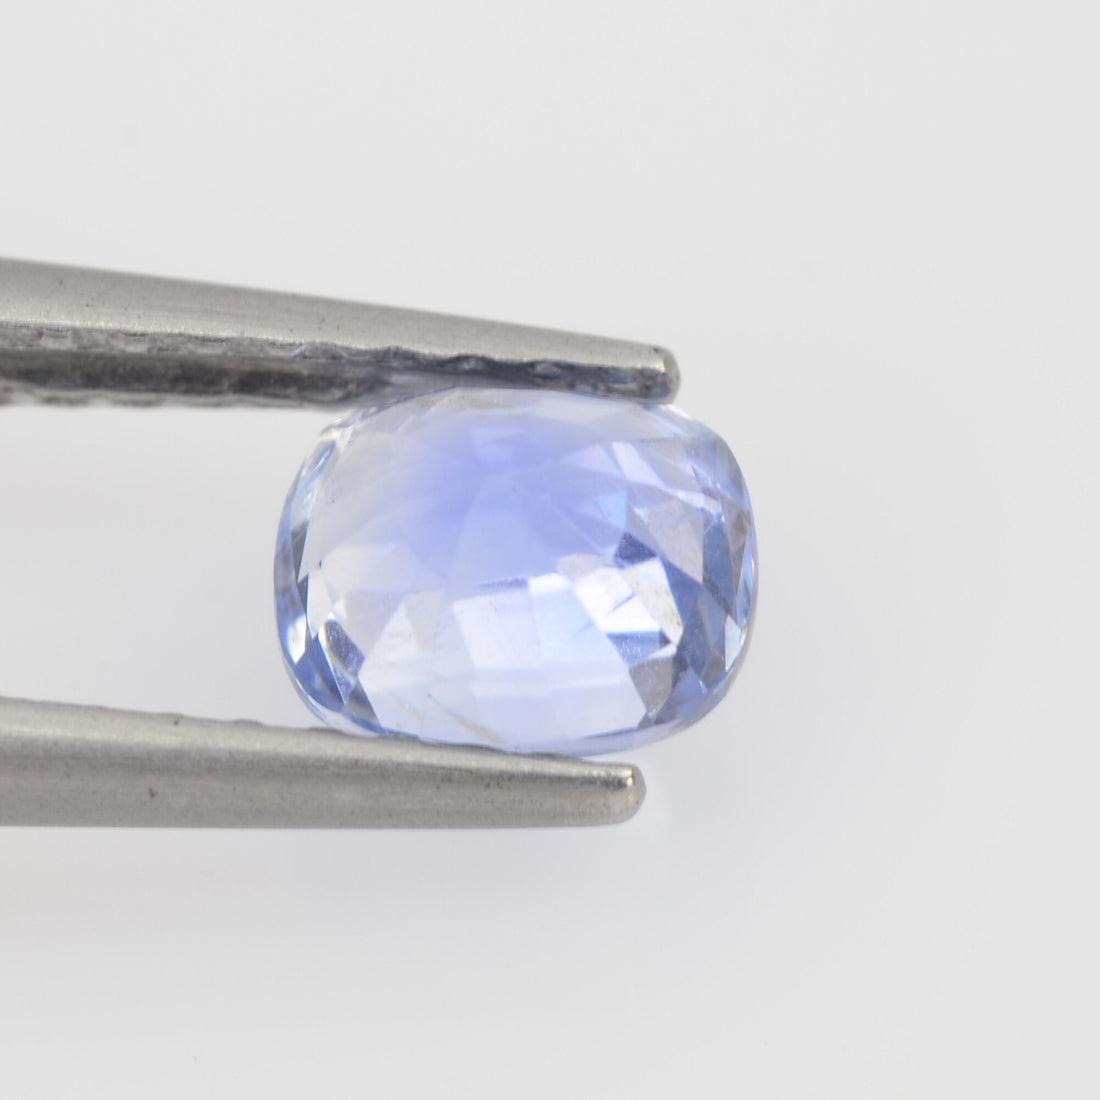 0.78-0.84 cts Natural Blue Sapphire Loose Gemstone Cushion Cut